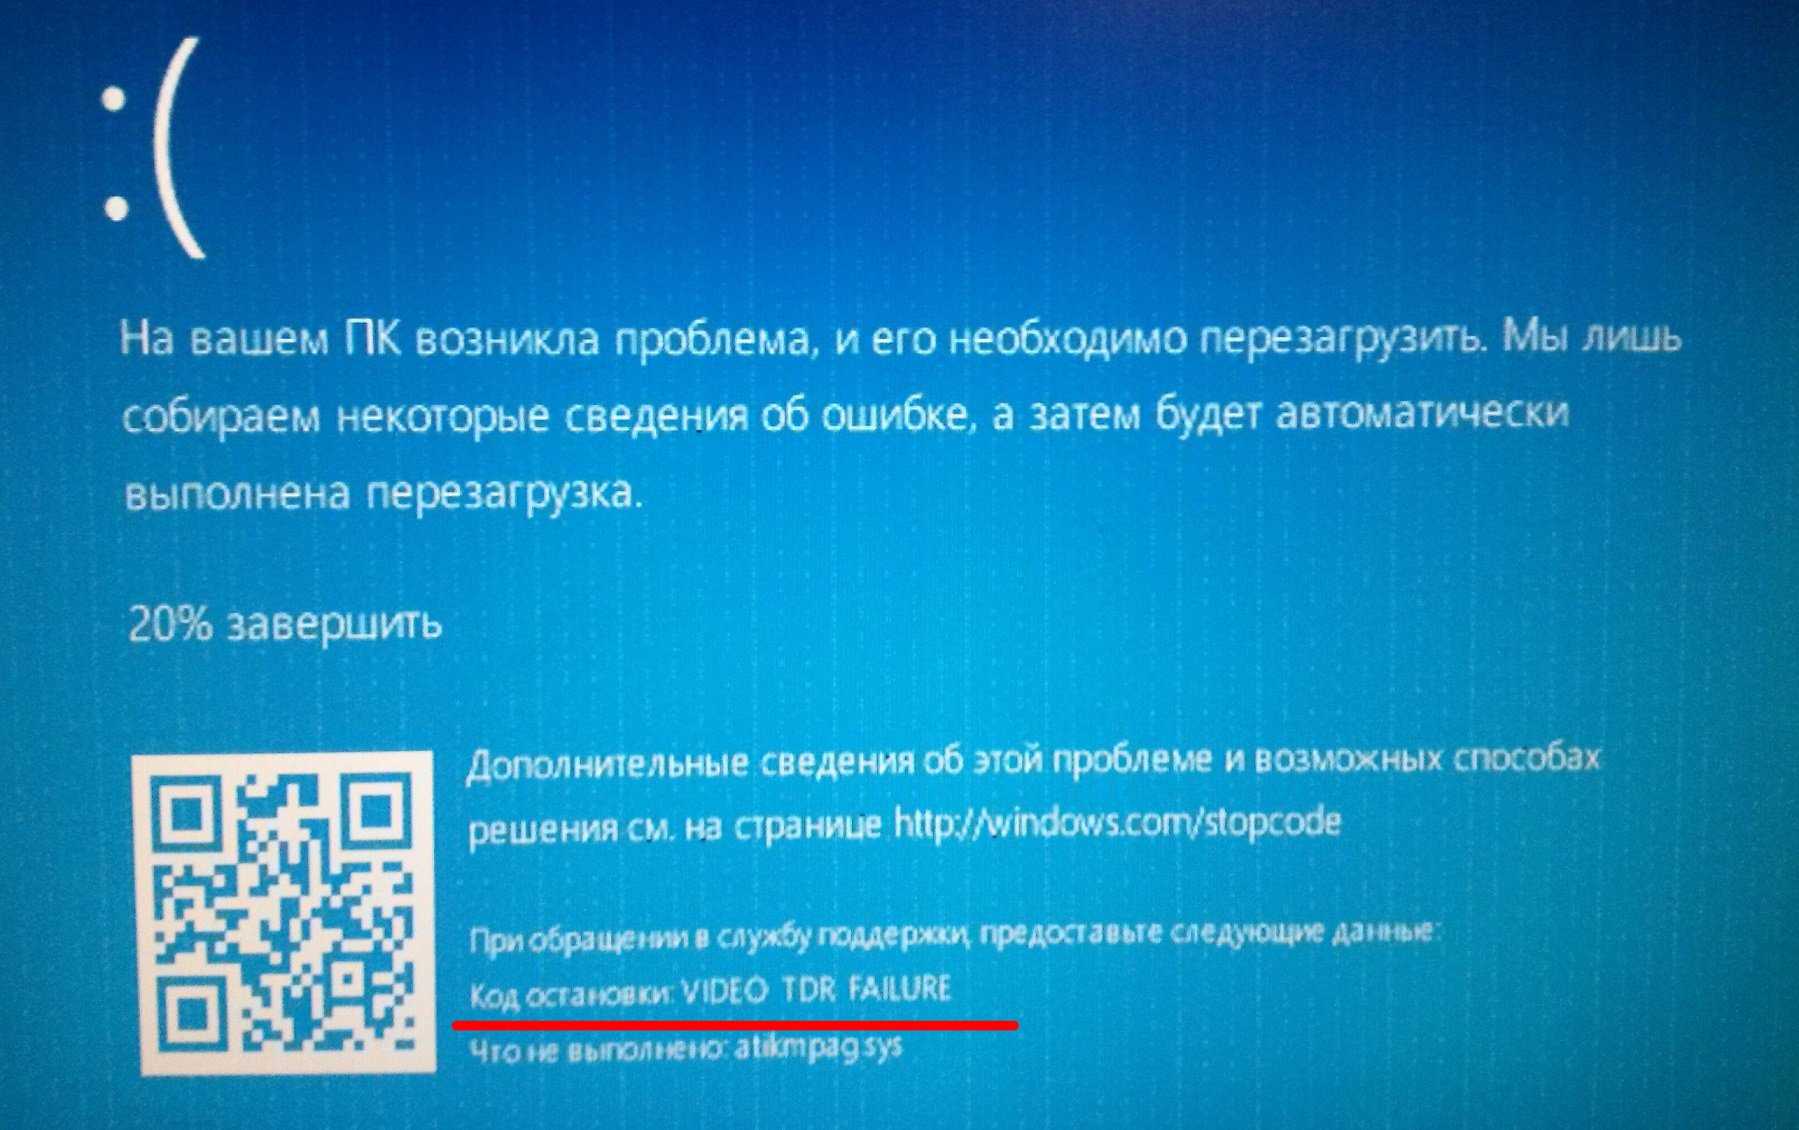 Как исправить ошибку video tdr failure в windows 10 и 8 | onoutbukax.ru